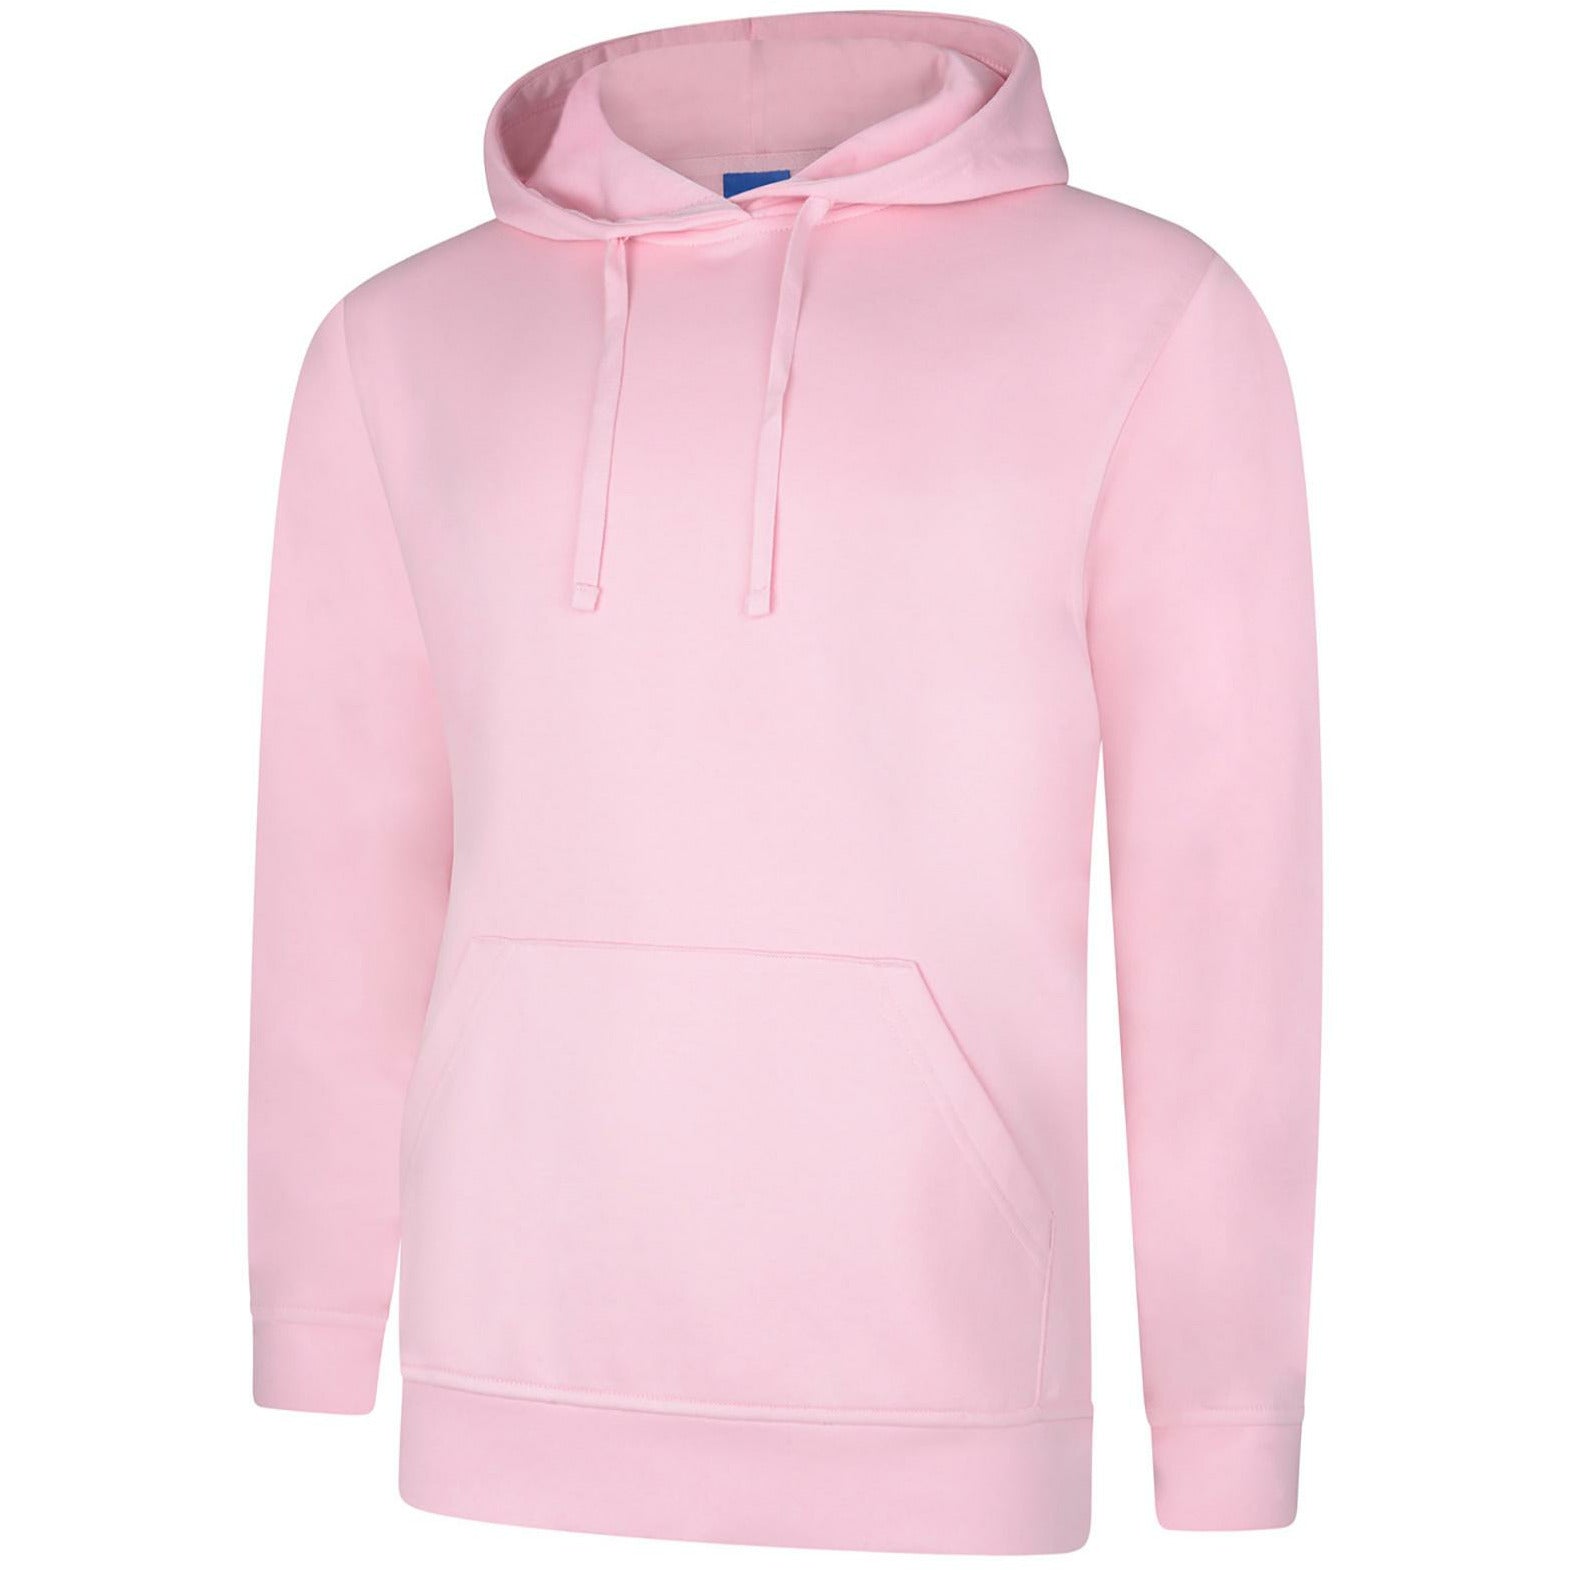 Deluxe Hooded Sweatshirt (L - 2XL) Pink